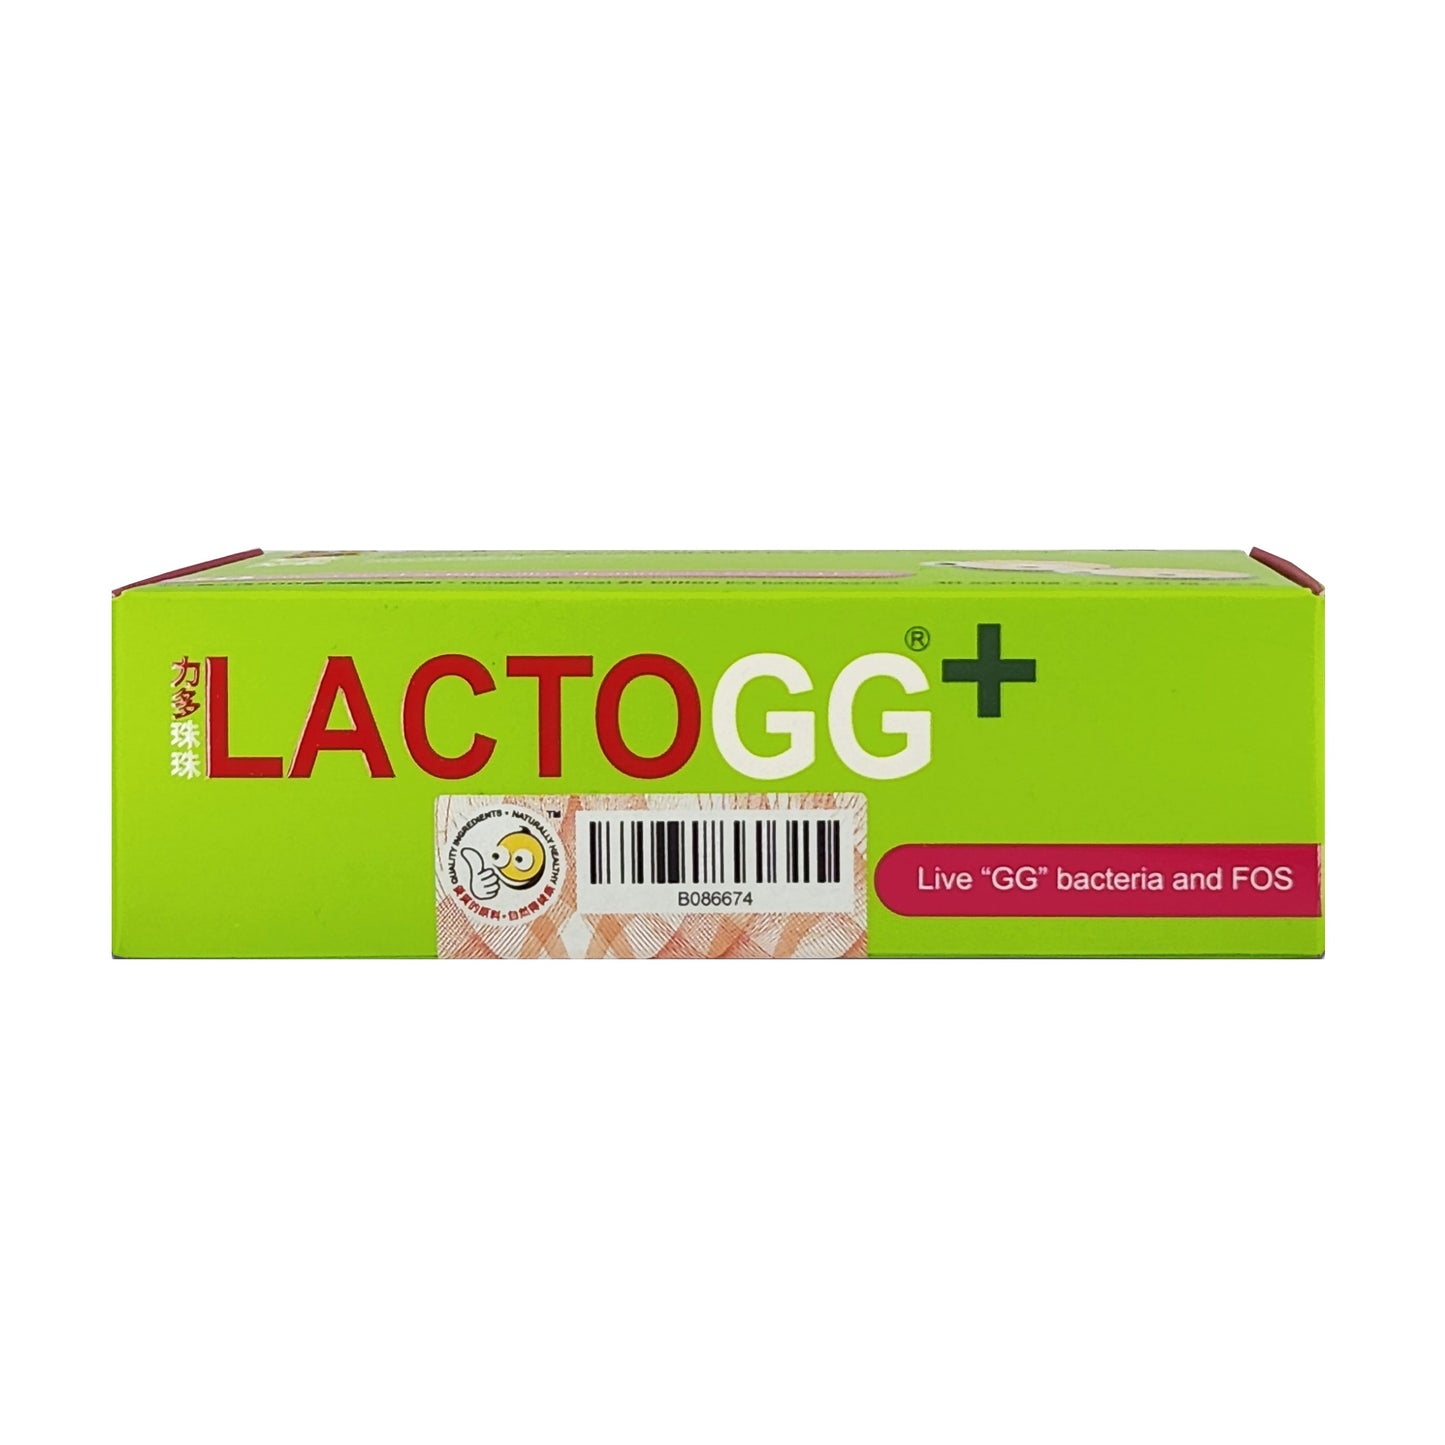 LactoGG+ 益生菌袋装 30 粒 - 乳酸杆菌 GG